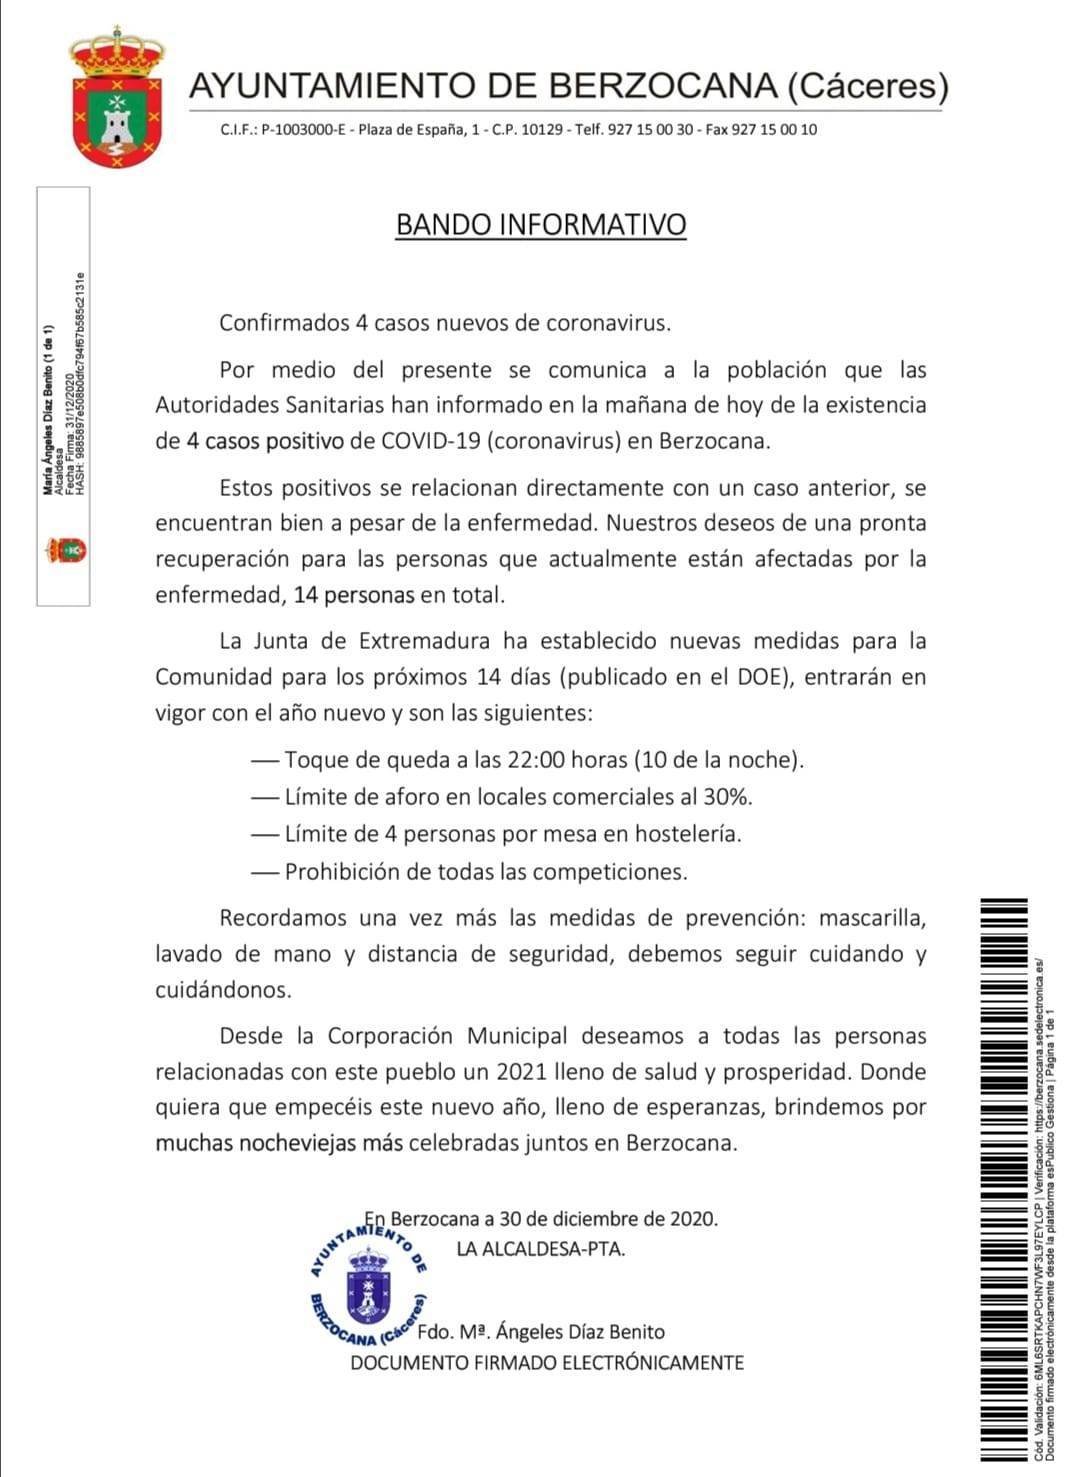 4 nuevos casos positivos de COVID-19 (diciembre 2020) - Berzocana (Cáceres)